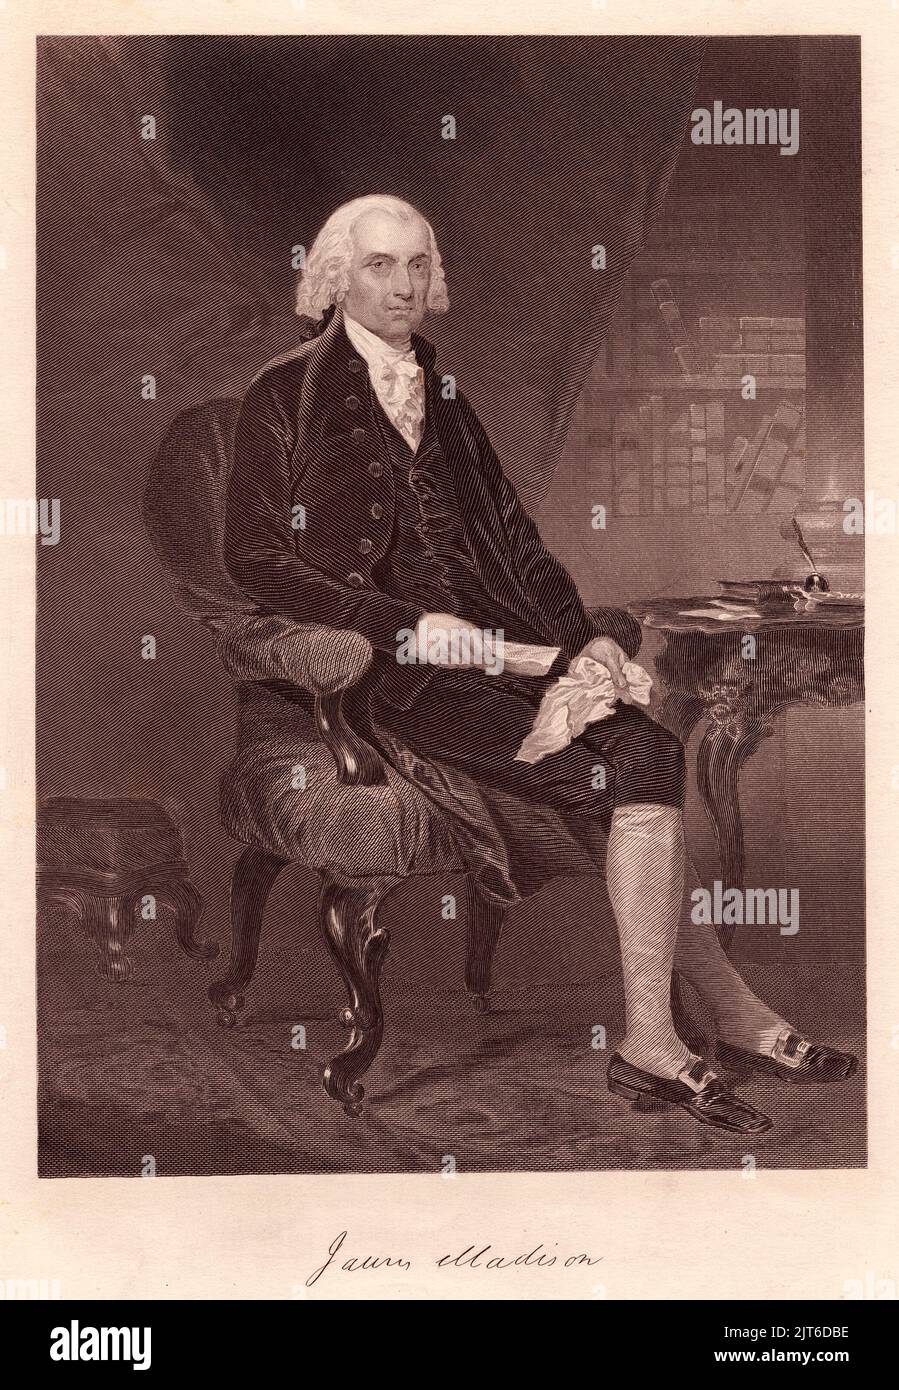 Ein Porträt von James Madison, dem vierten Präsidenten der Vereinigten Staaten Stockfoto